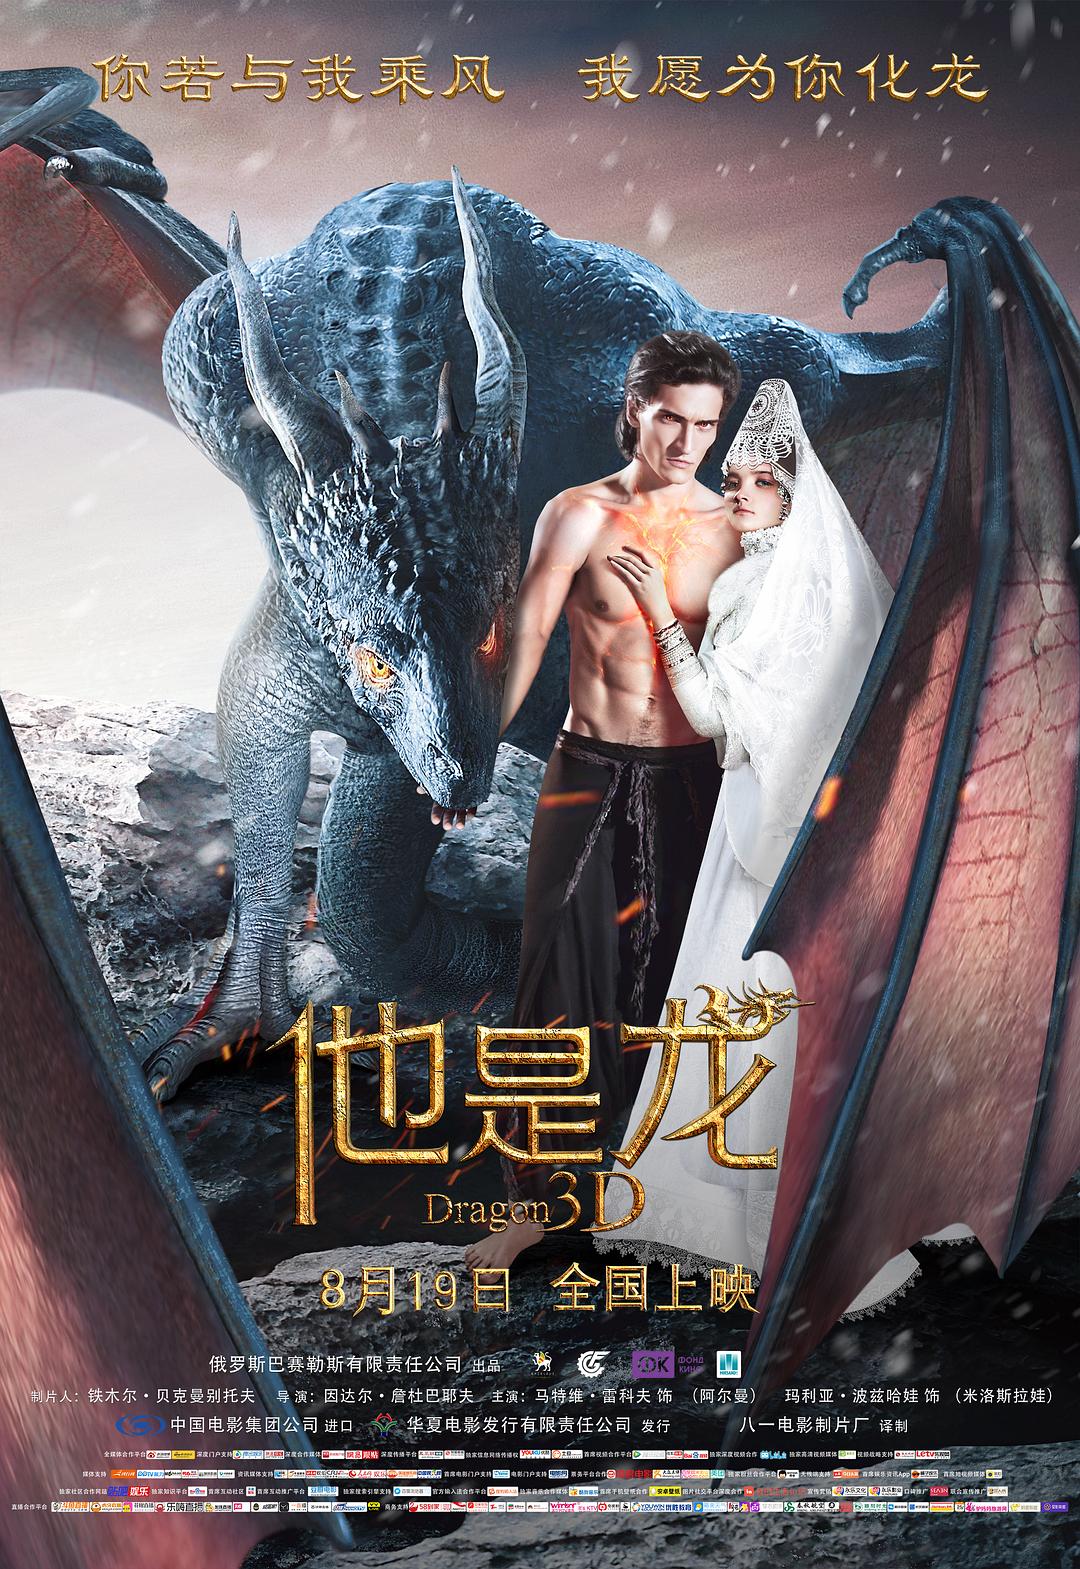 他是龙 [公映次世代国语/简体字幕].Dragons.2015.BluRay.REMUX.1080p.AVC.DTS-HD.MA5.1-TAG 19.90GB-1.jpg